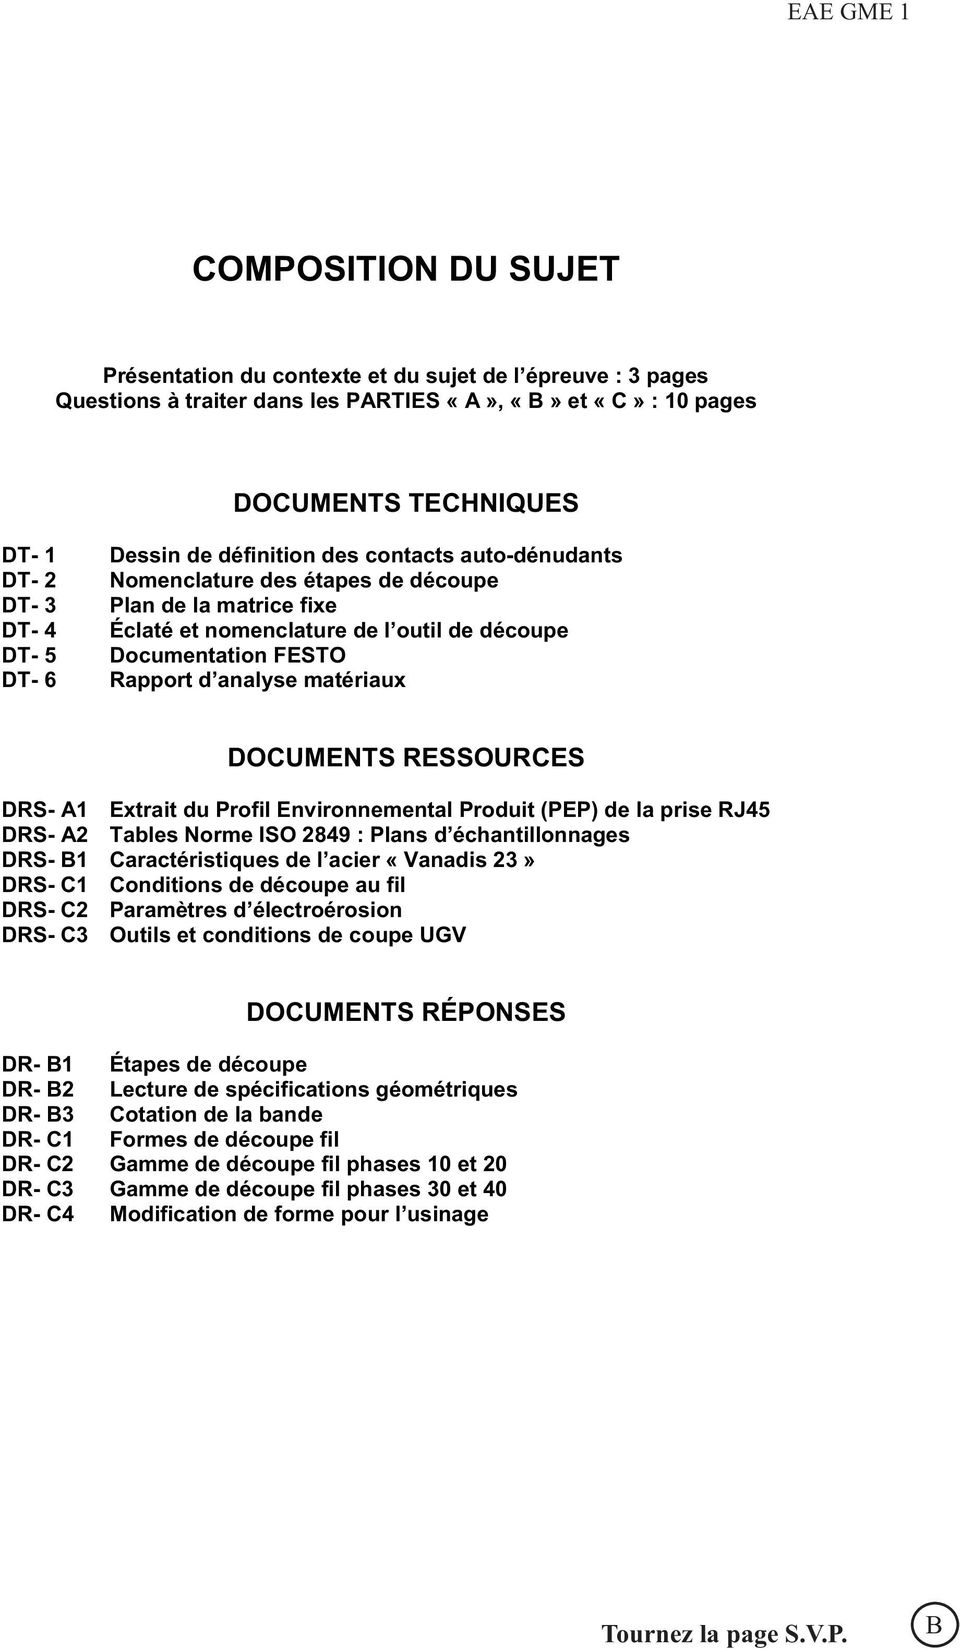 analyse matériaux DOCUMENTS RESSOURCES DRS- A1 Extrait du Profil Environnemental Produit (PEP) de la prise RJ45 DRS- A2 Tables Norme ISO 2849 : Plans d échantillonnages DRS- B1 Caractéristiques de l